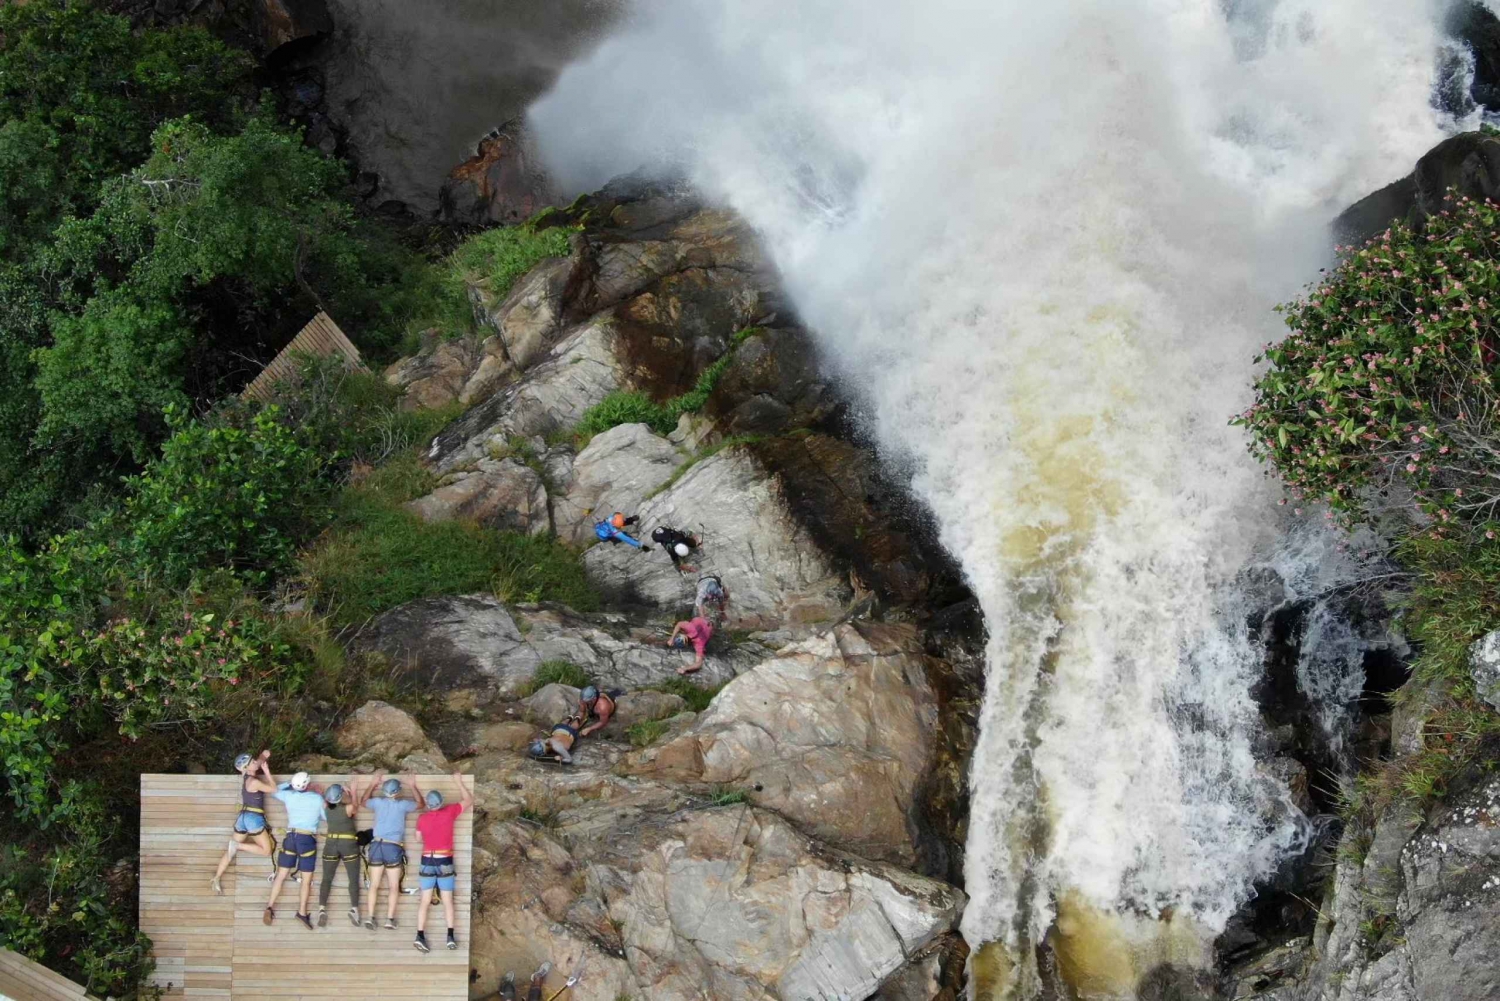 From Medellin:Powerful via Ferrata & Zipline Giant Waterfall